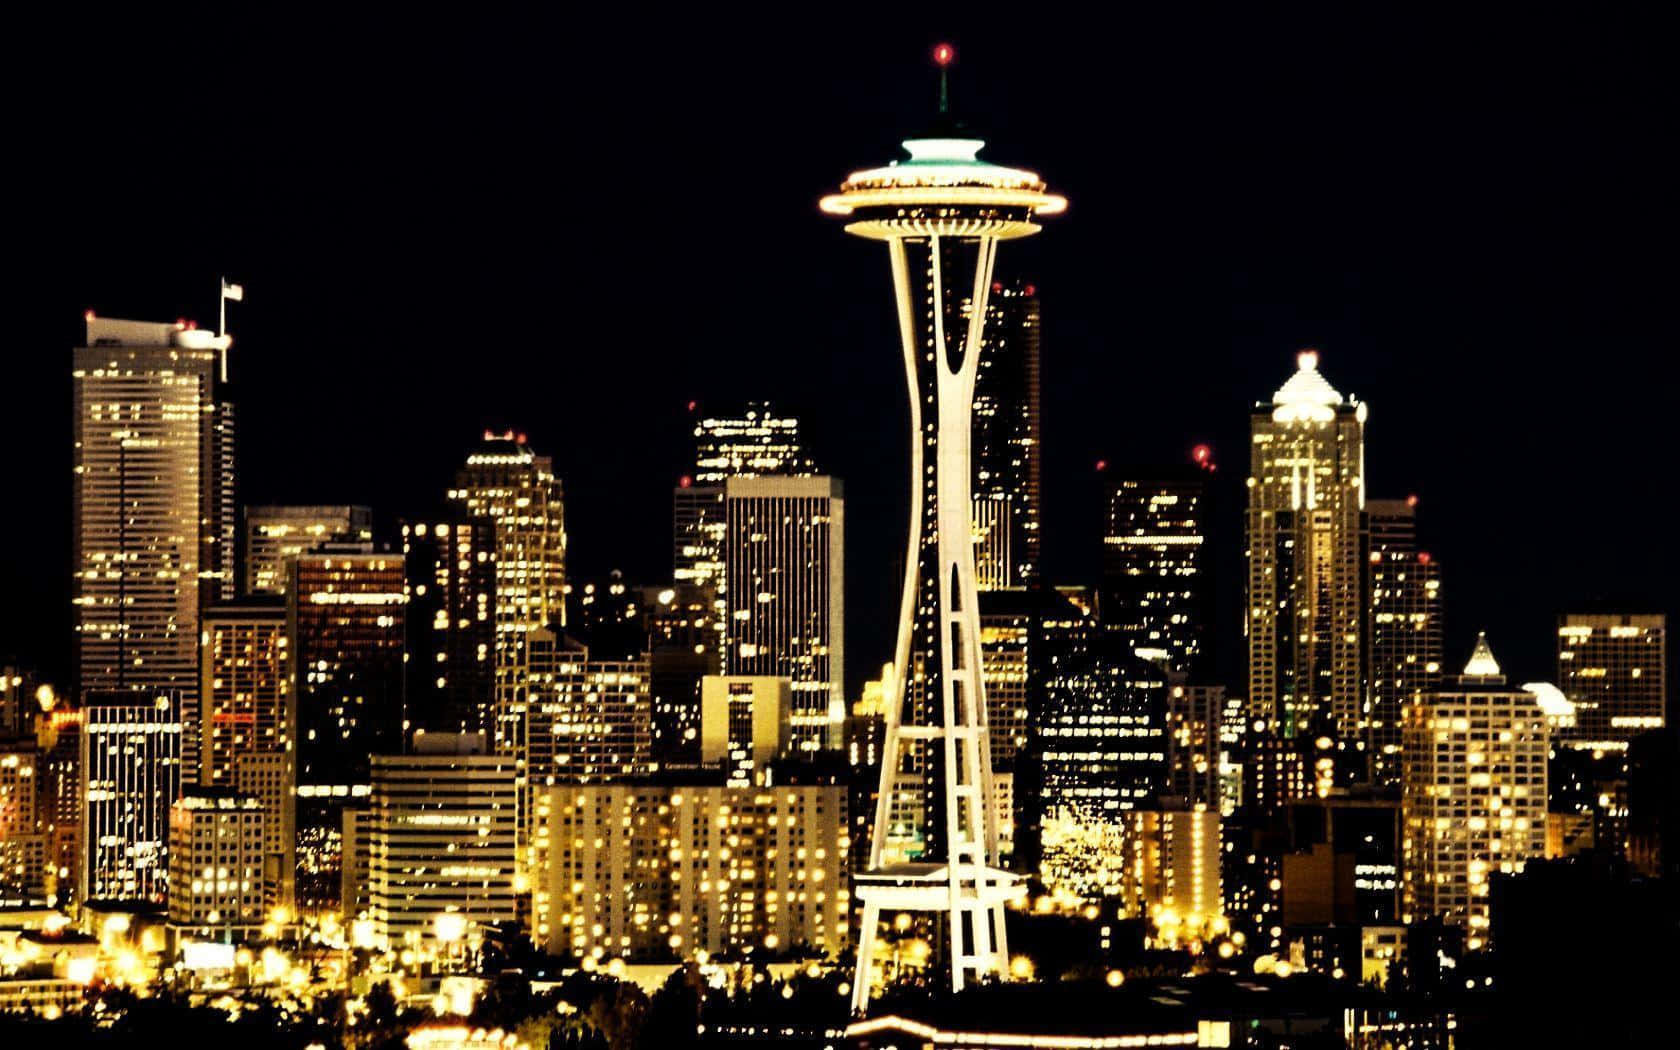 Paisagemda Cidade De Seattle À Noite, Com A Space Needle. Papel de Parede